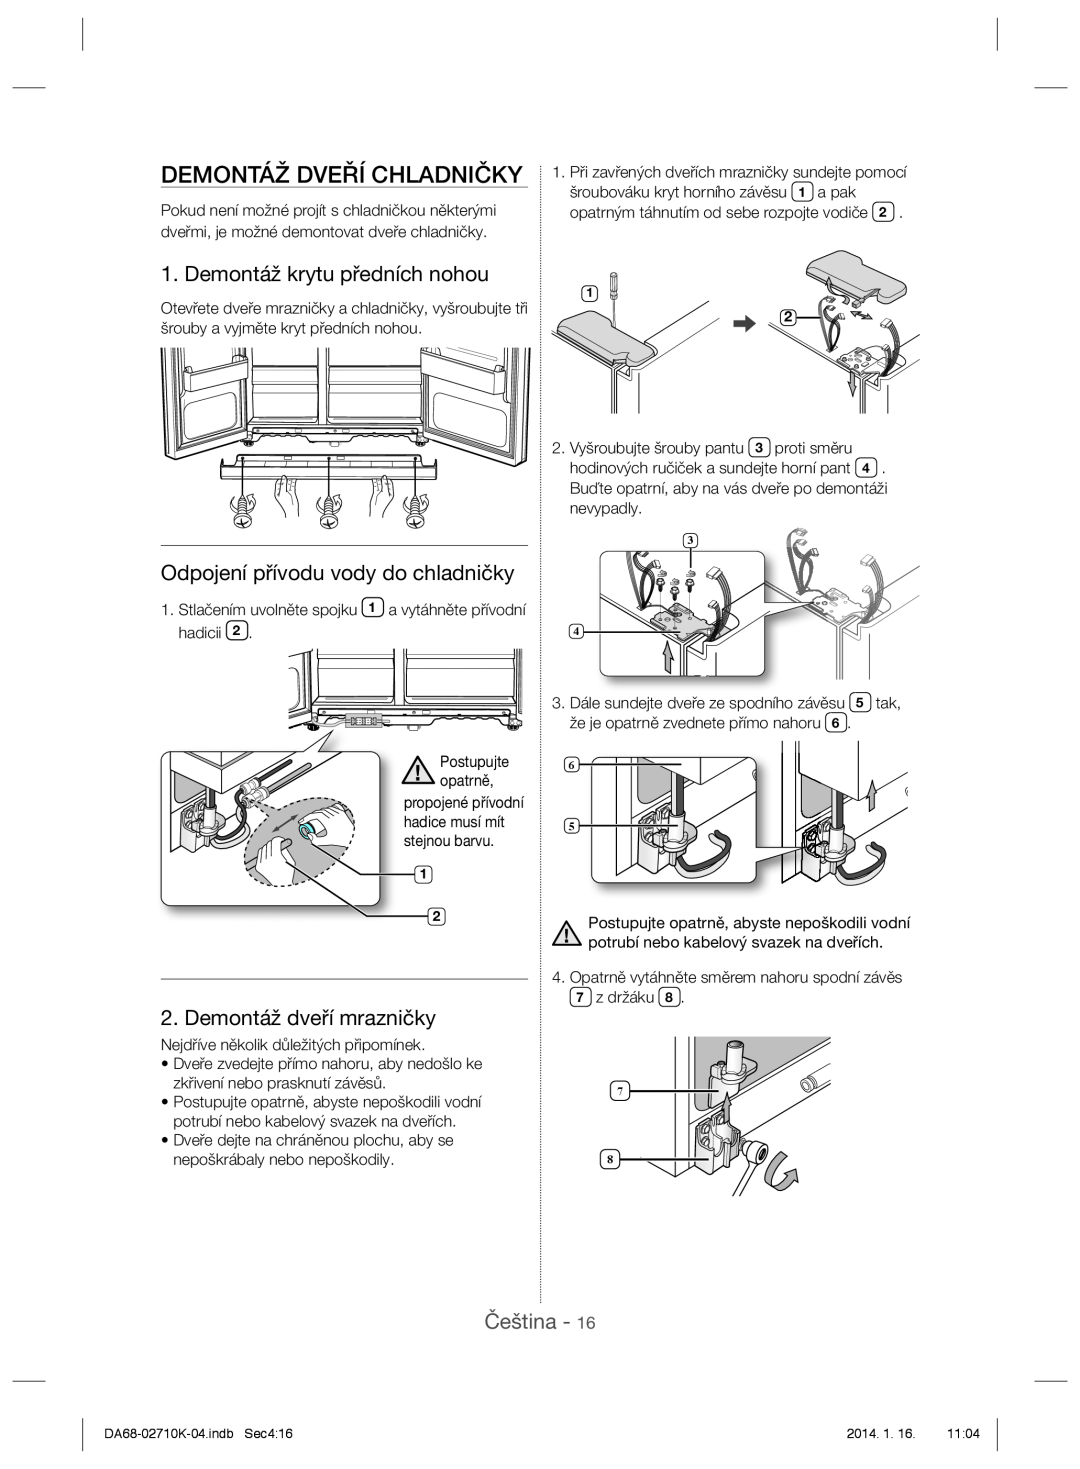 Samsung RS7577THCSP/EF manual Demontáž Dveří Chladničky, Demontáž krytu předních nohou, Odpojení přívodu vody do chladničky 